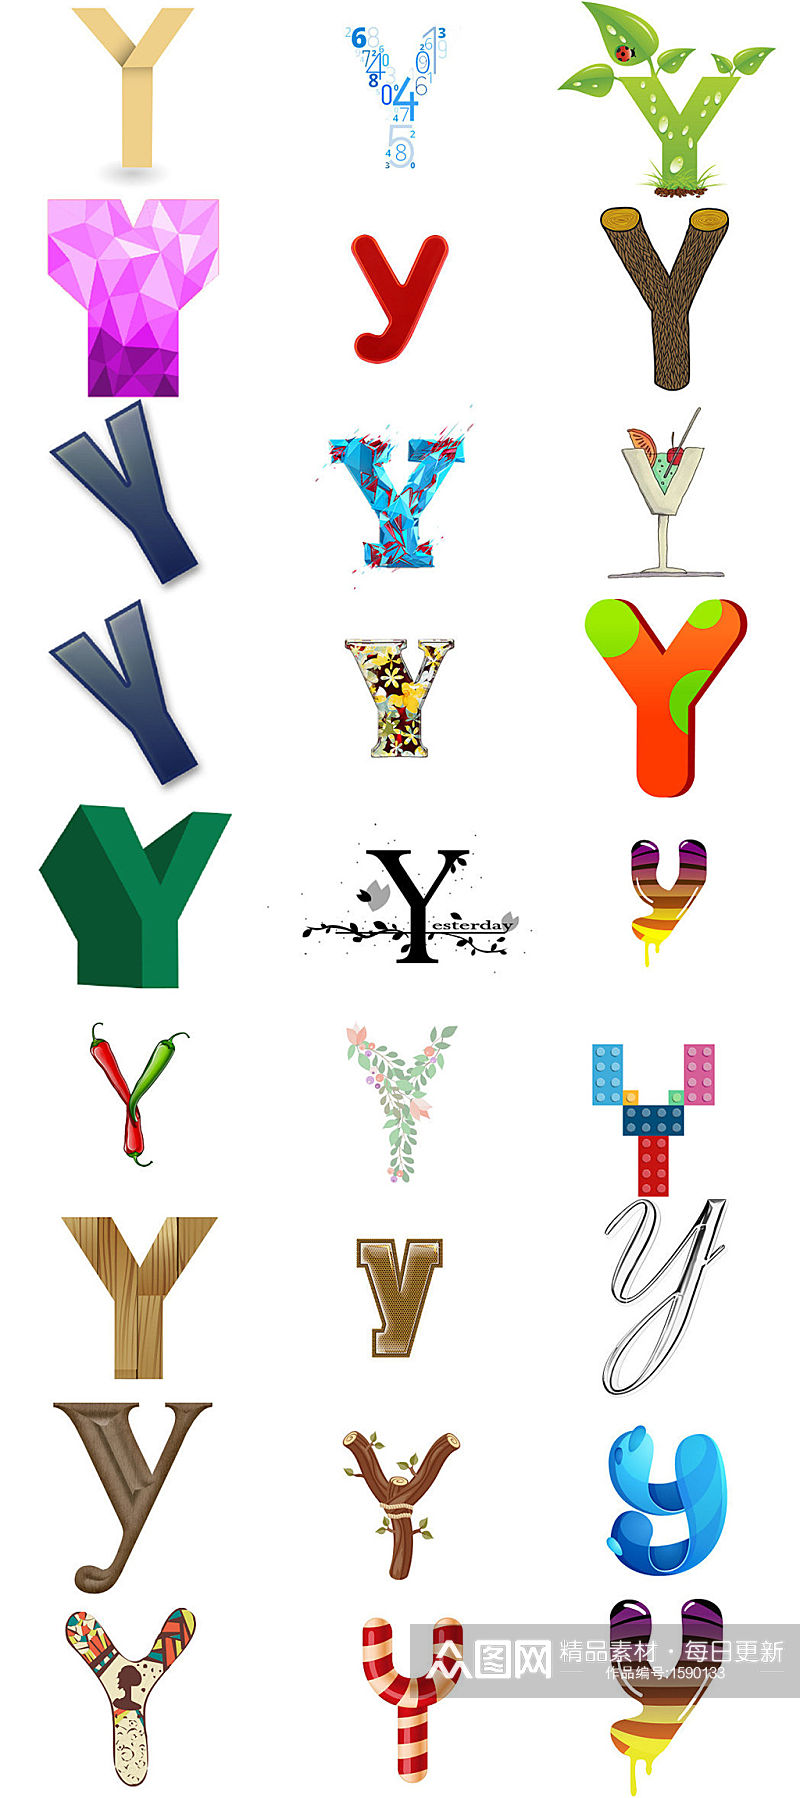 卡通英文字母Y设计素材素材